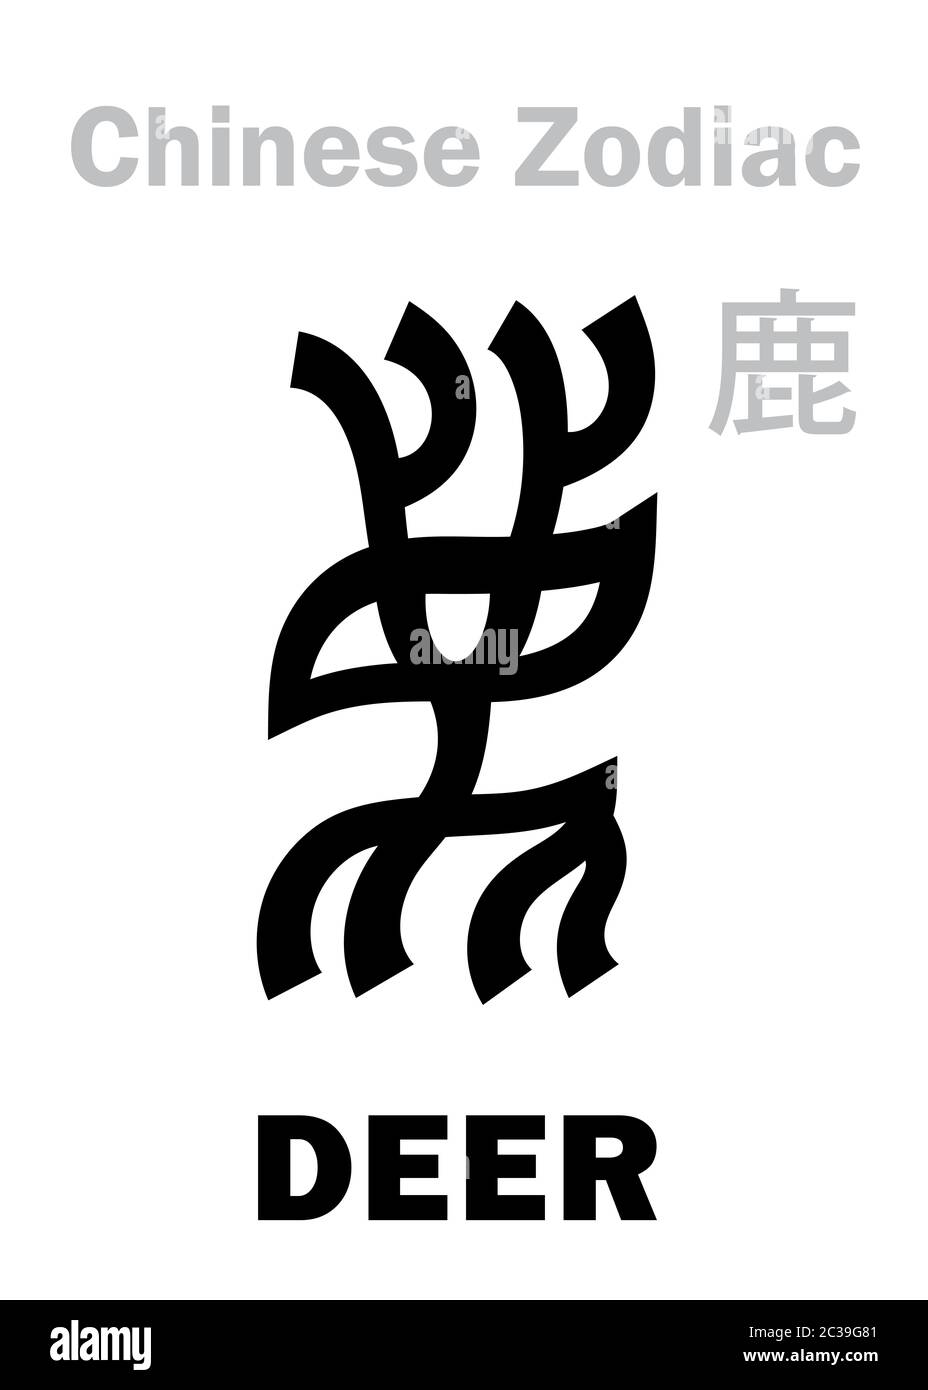 Astrologie: CERF (signe de zodiaque chinois) Banque D'Images